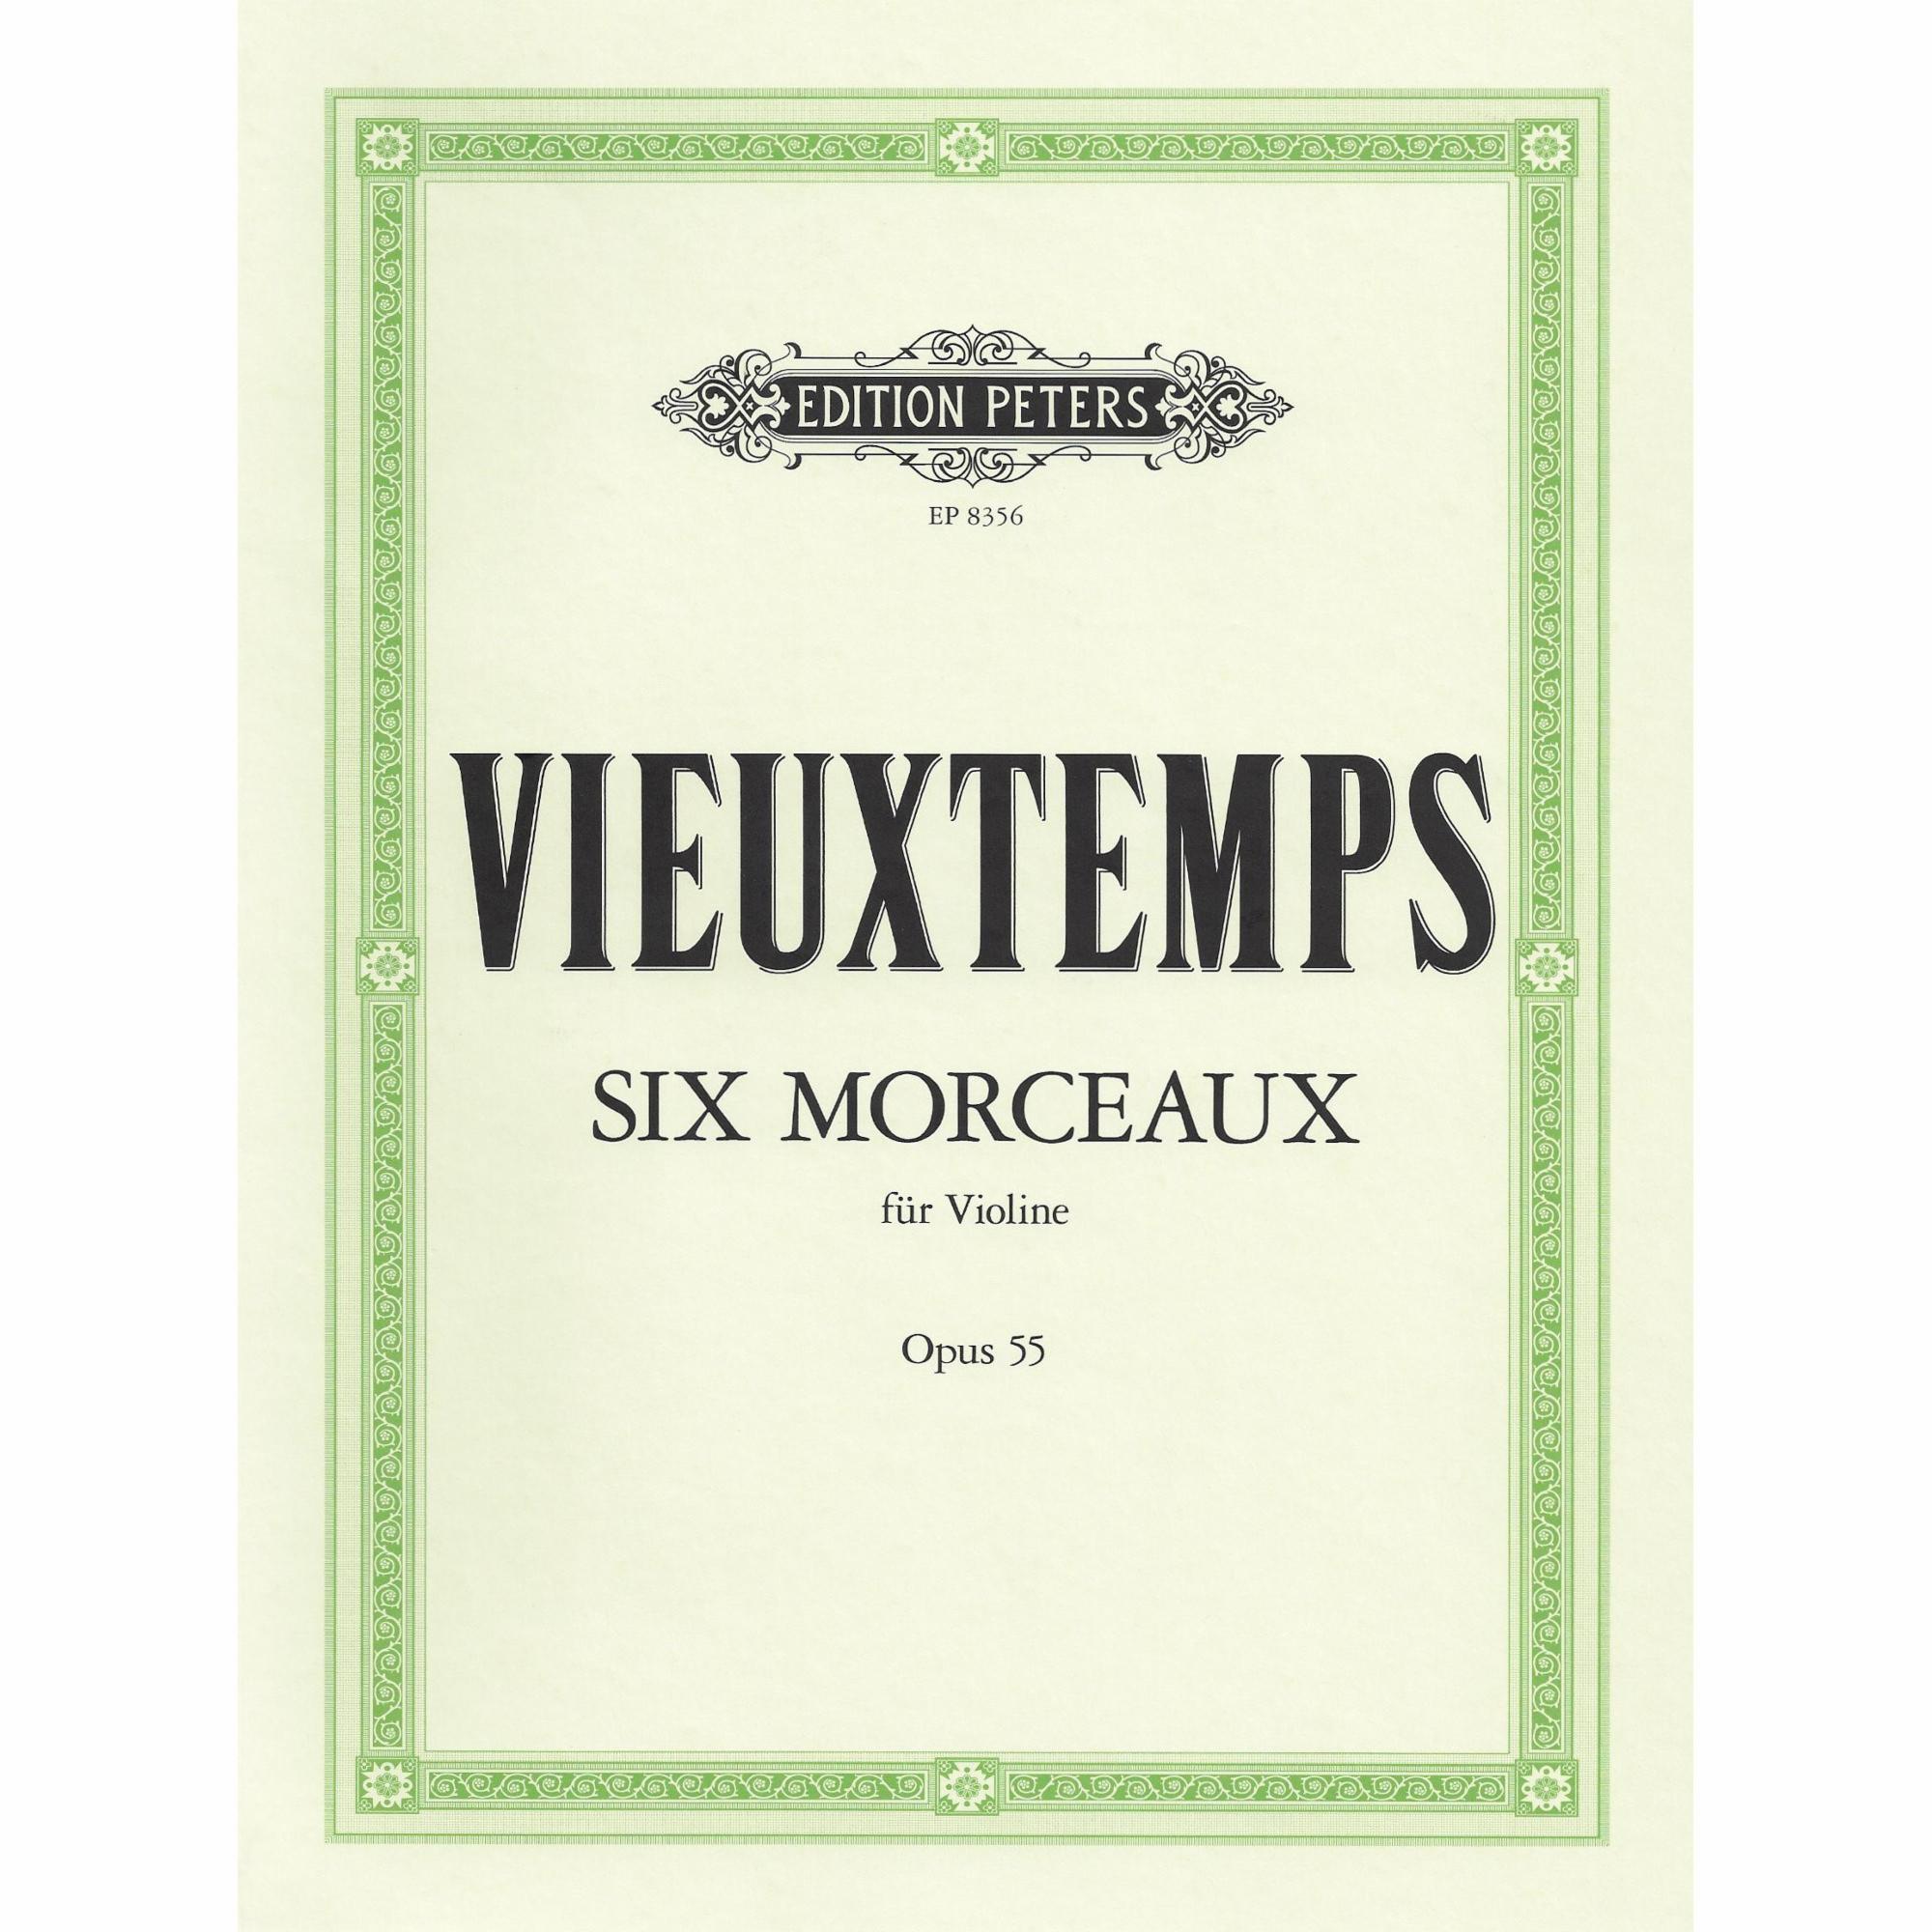 Vieuxtemps -- Six Morceaux, Op. 55 for Solo Violin